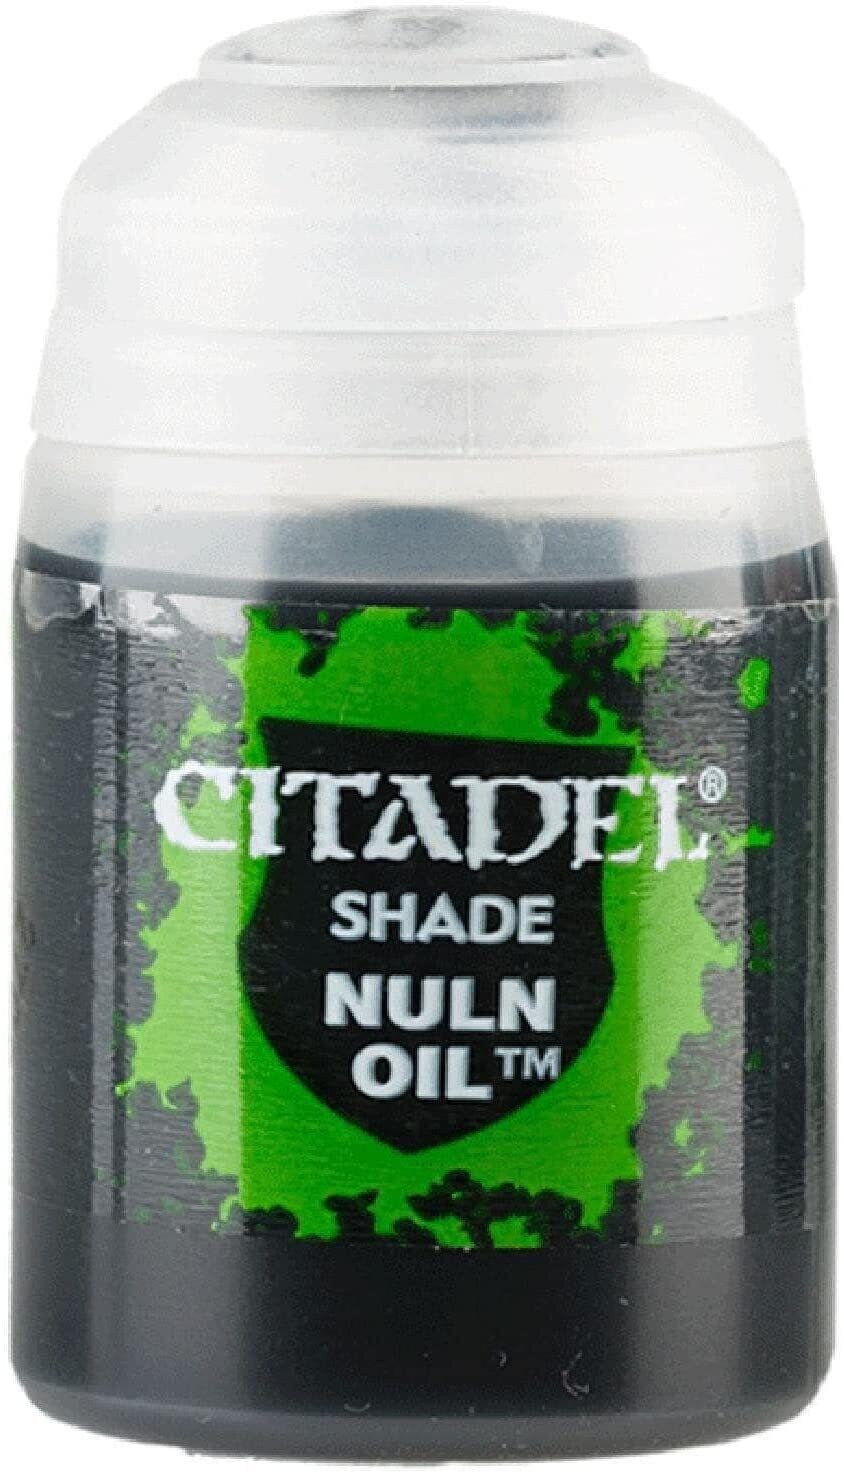 Shade: Nuln oil 24ml